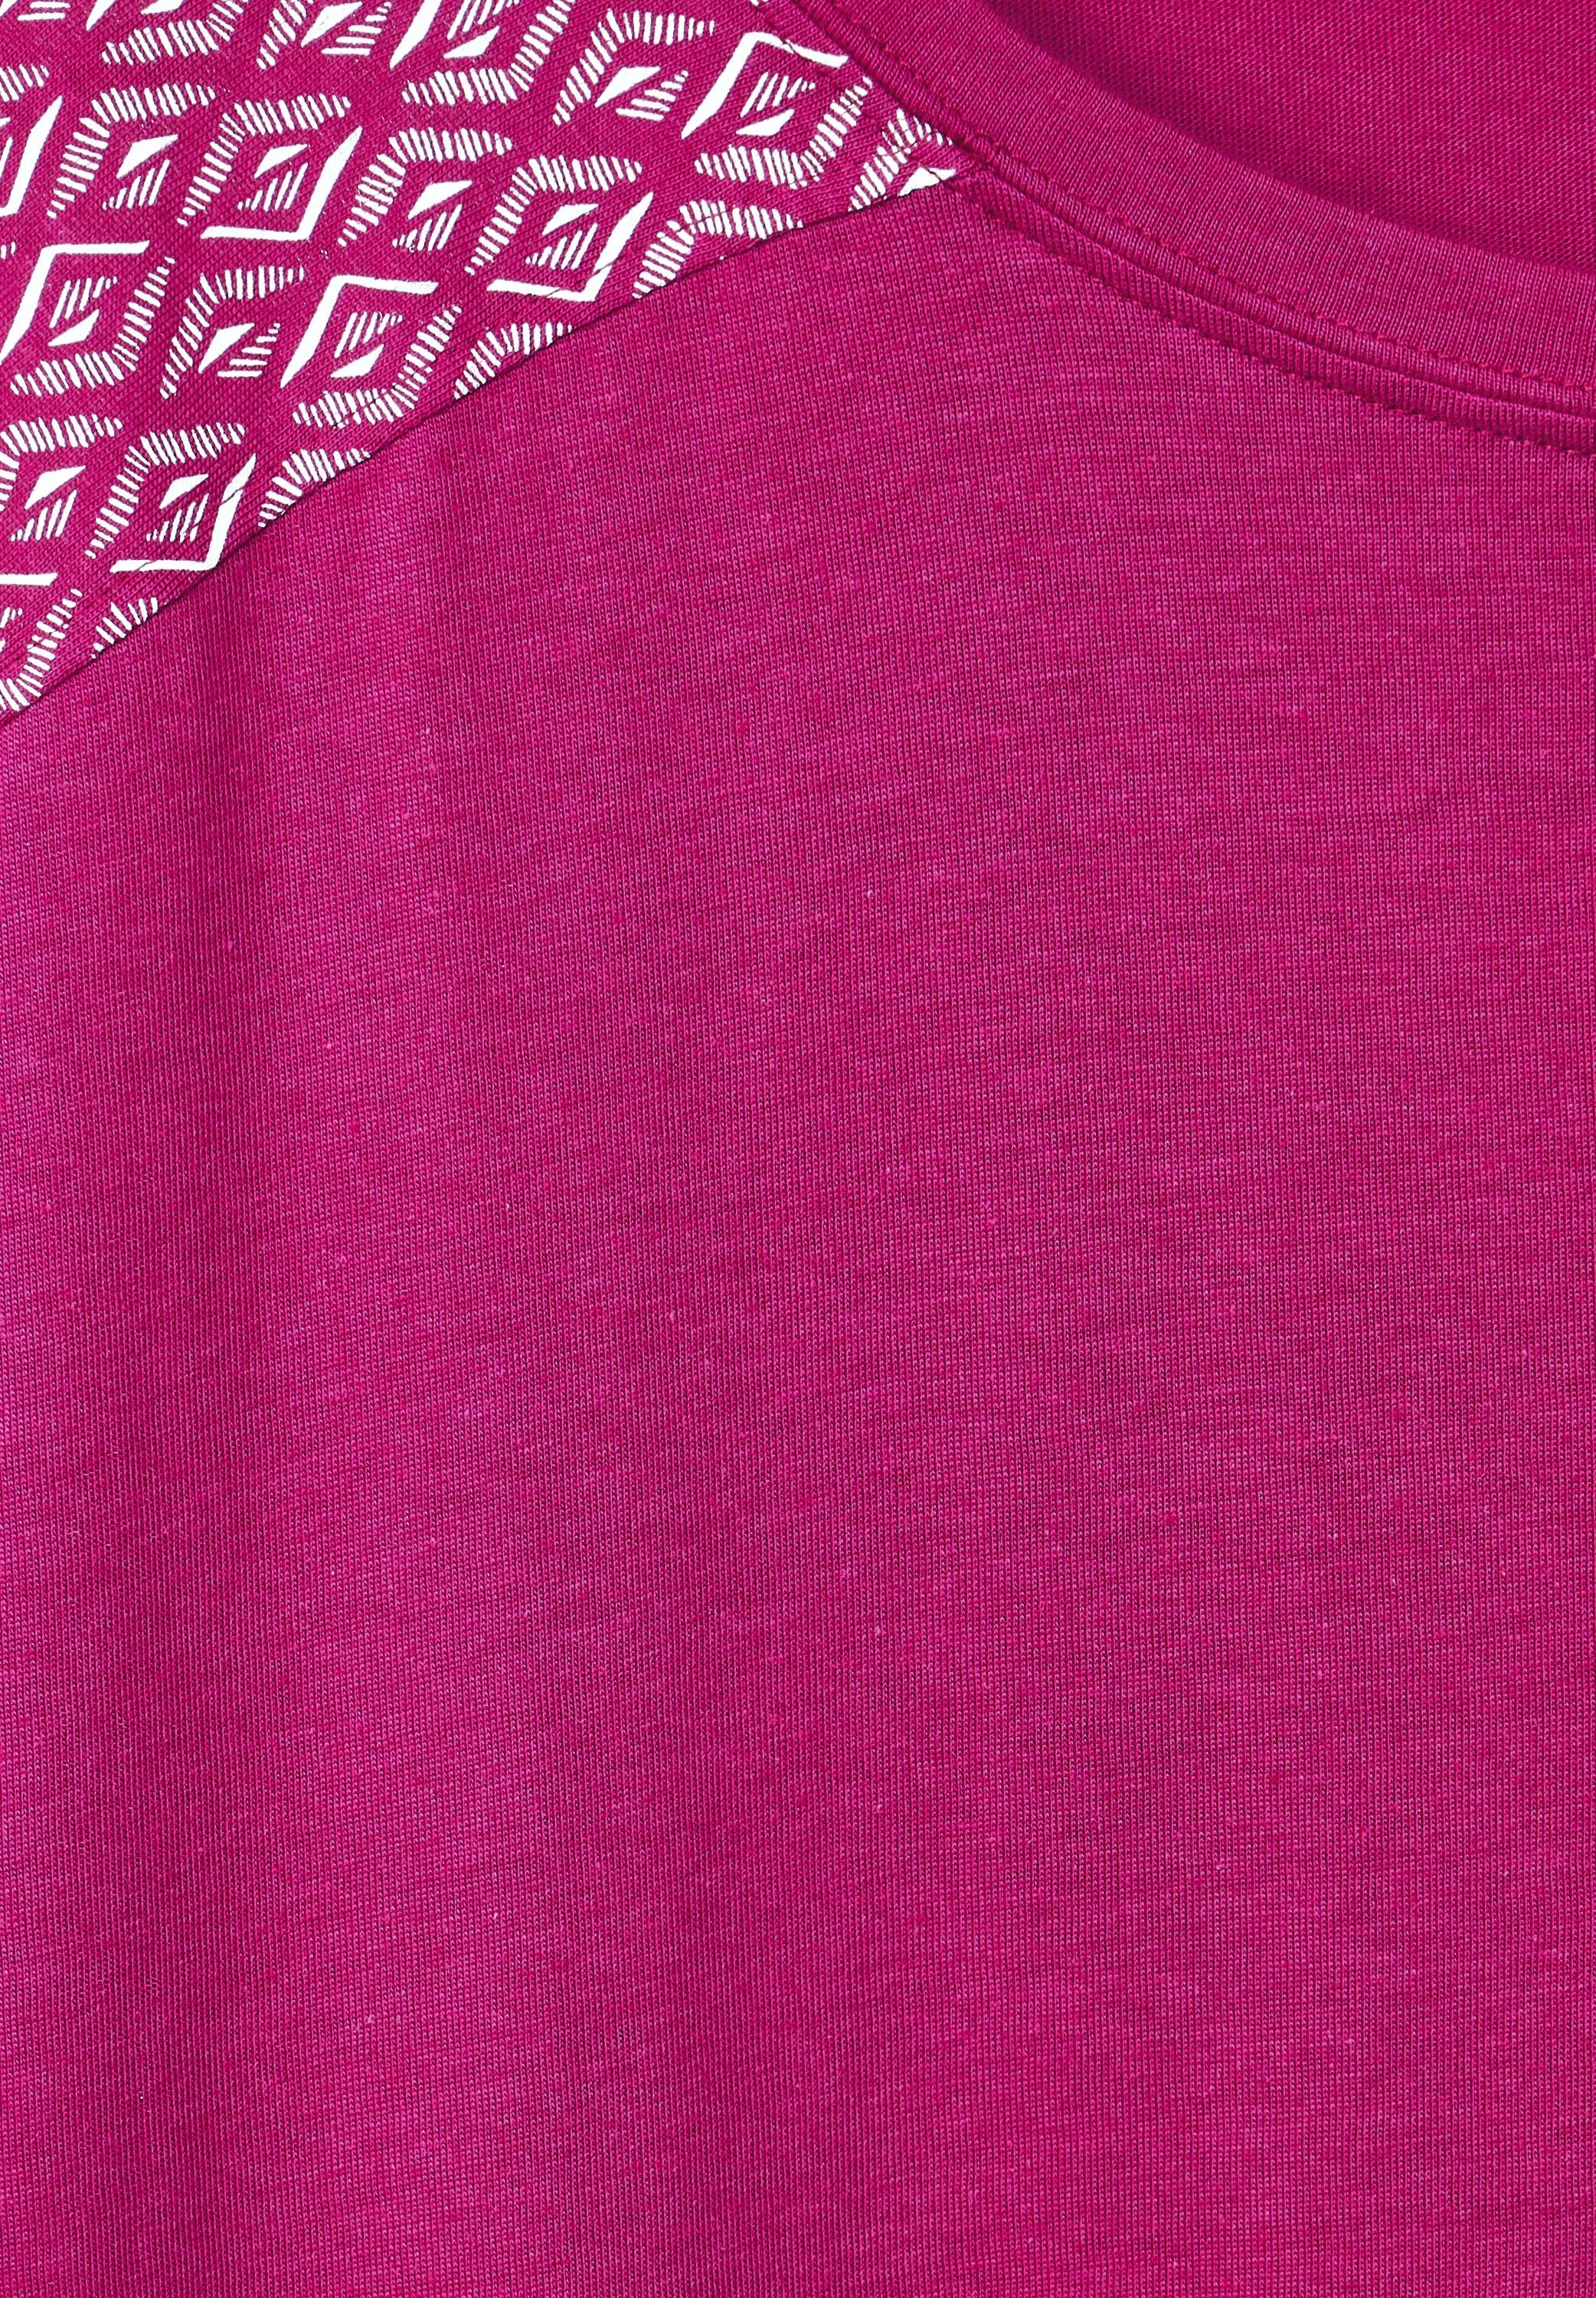 Cecil T-Shirt aus Materialmix cool pink softem